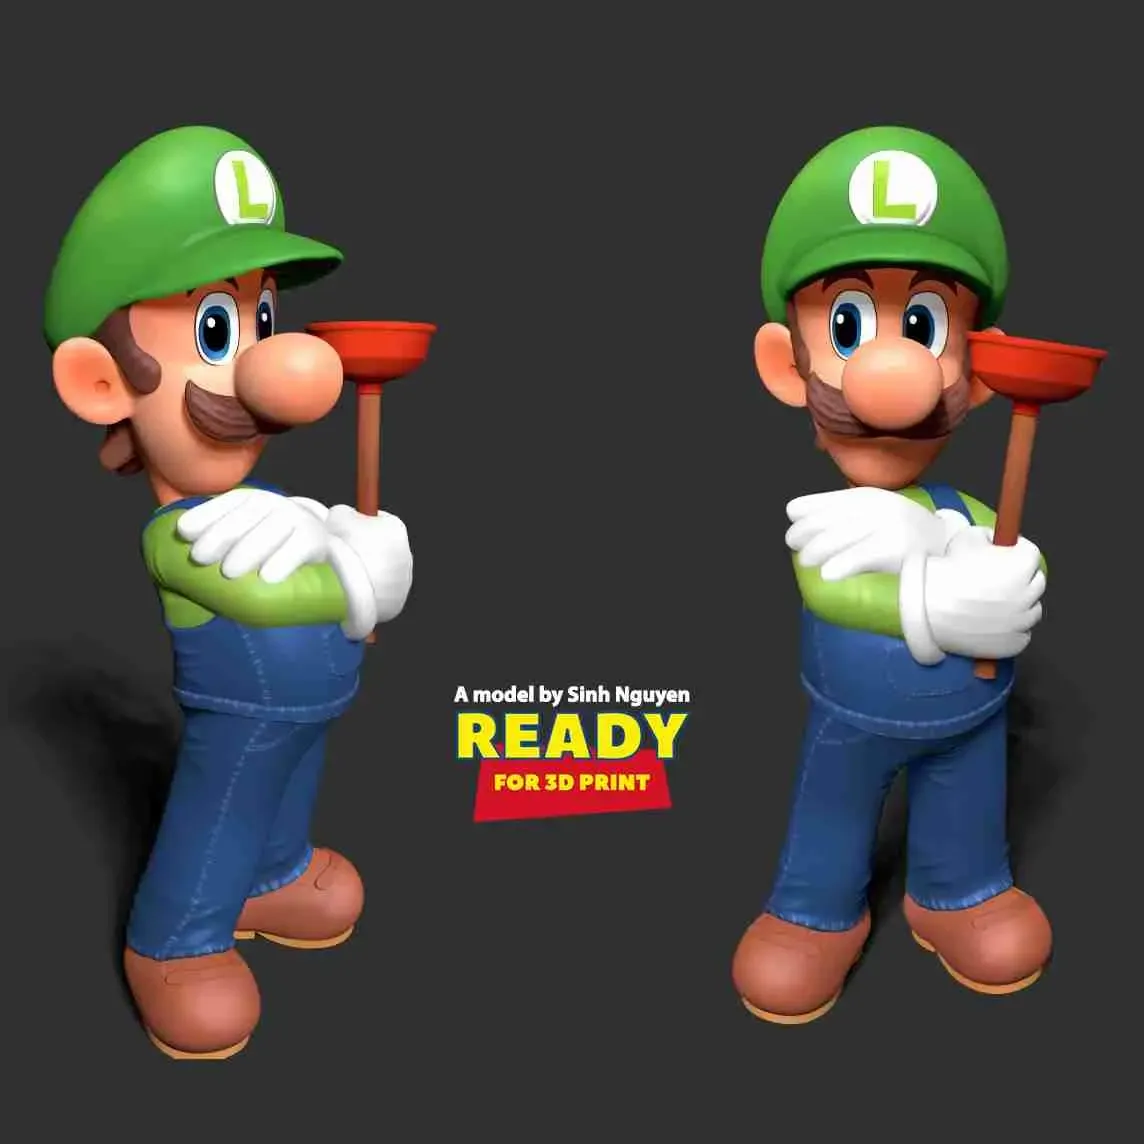 Luigi - The Super Mario Bros